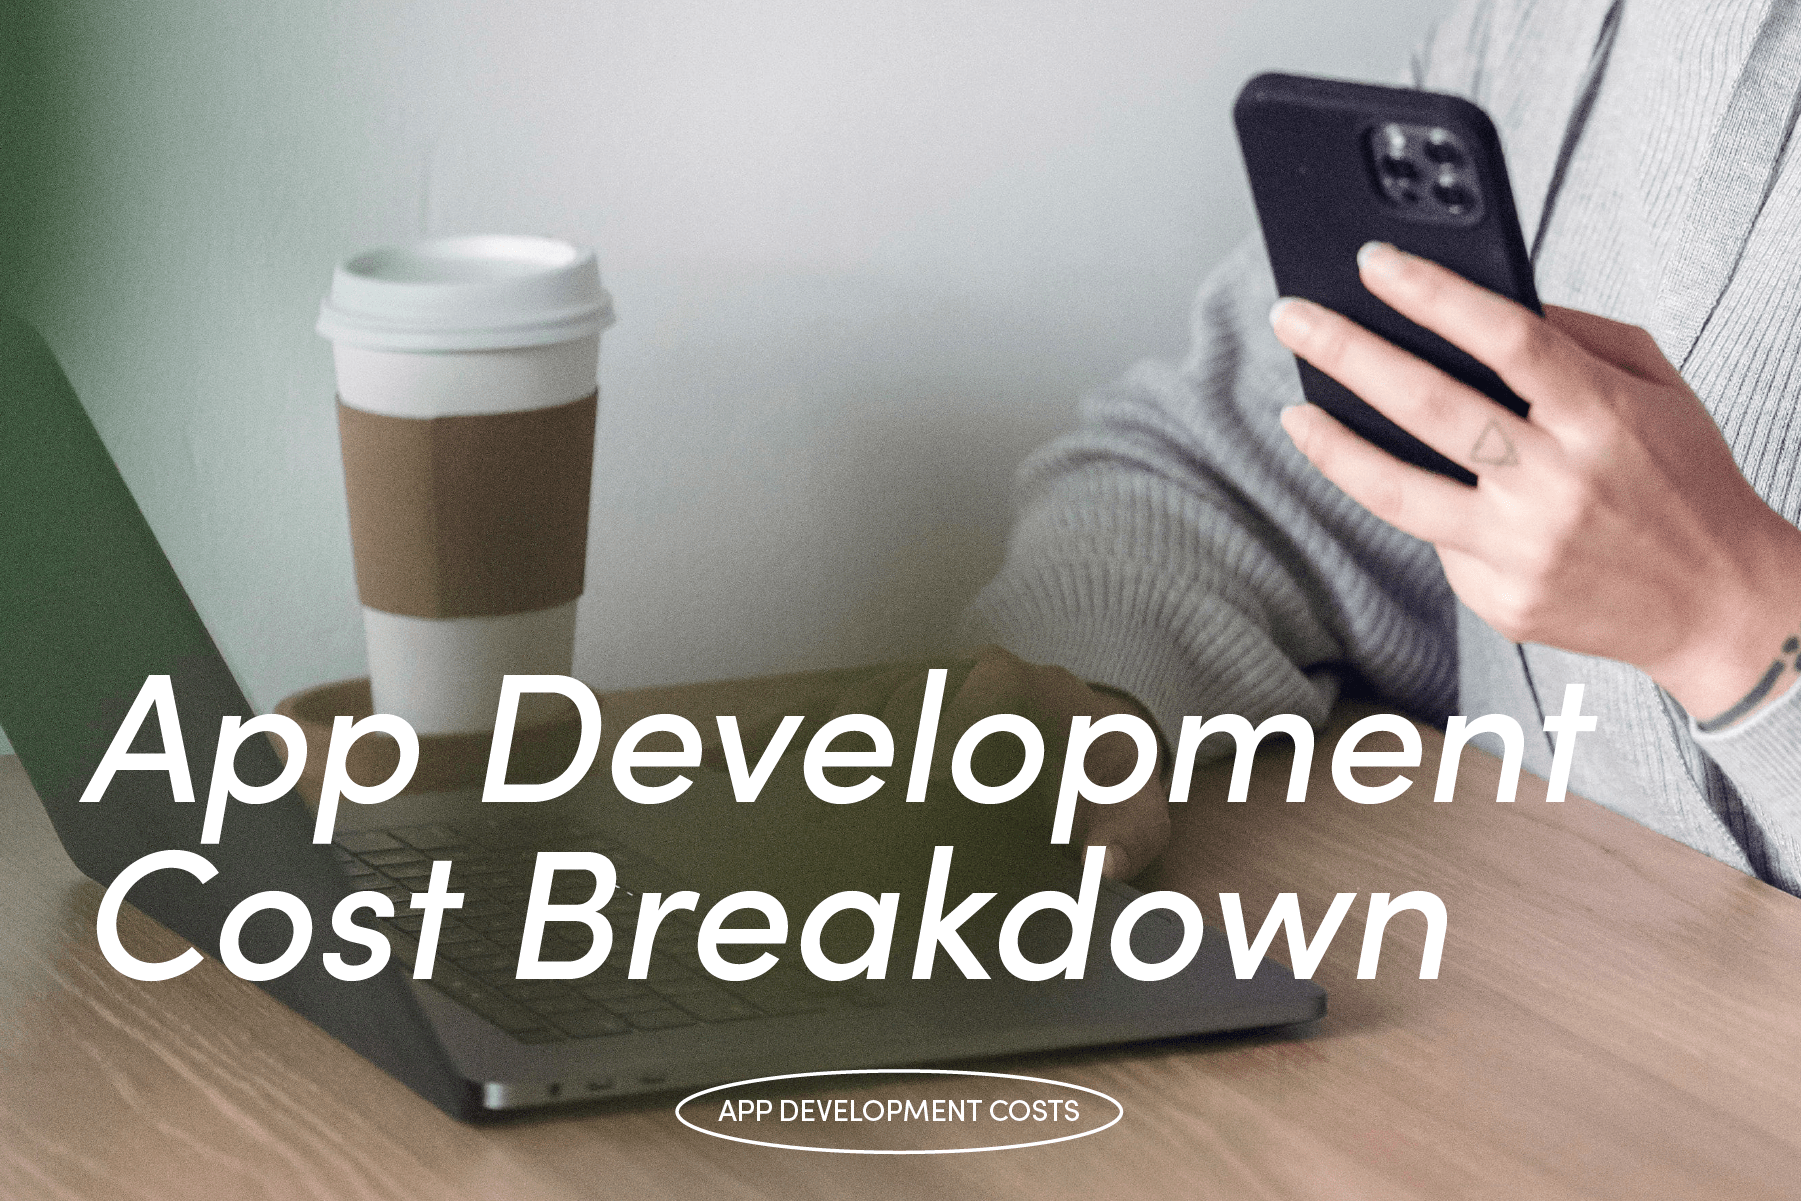 App Development Cost Breakdown